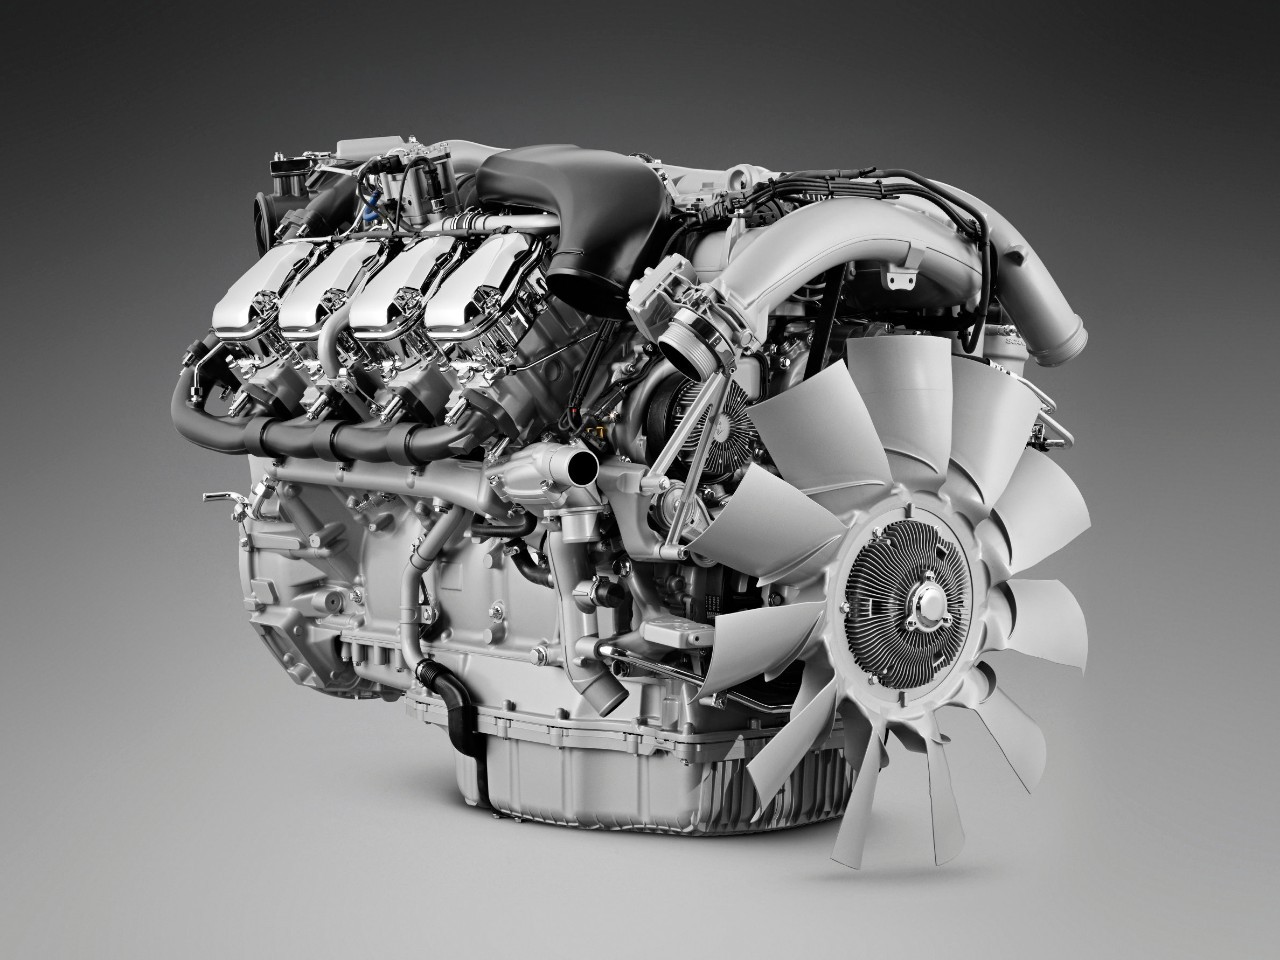 XT engine image